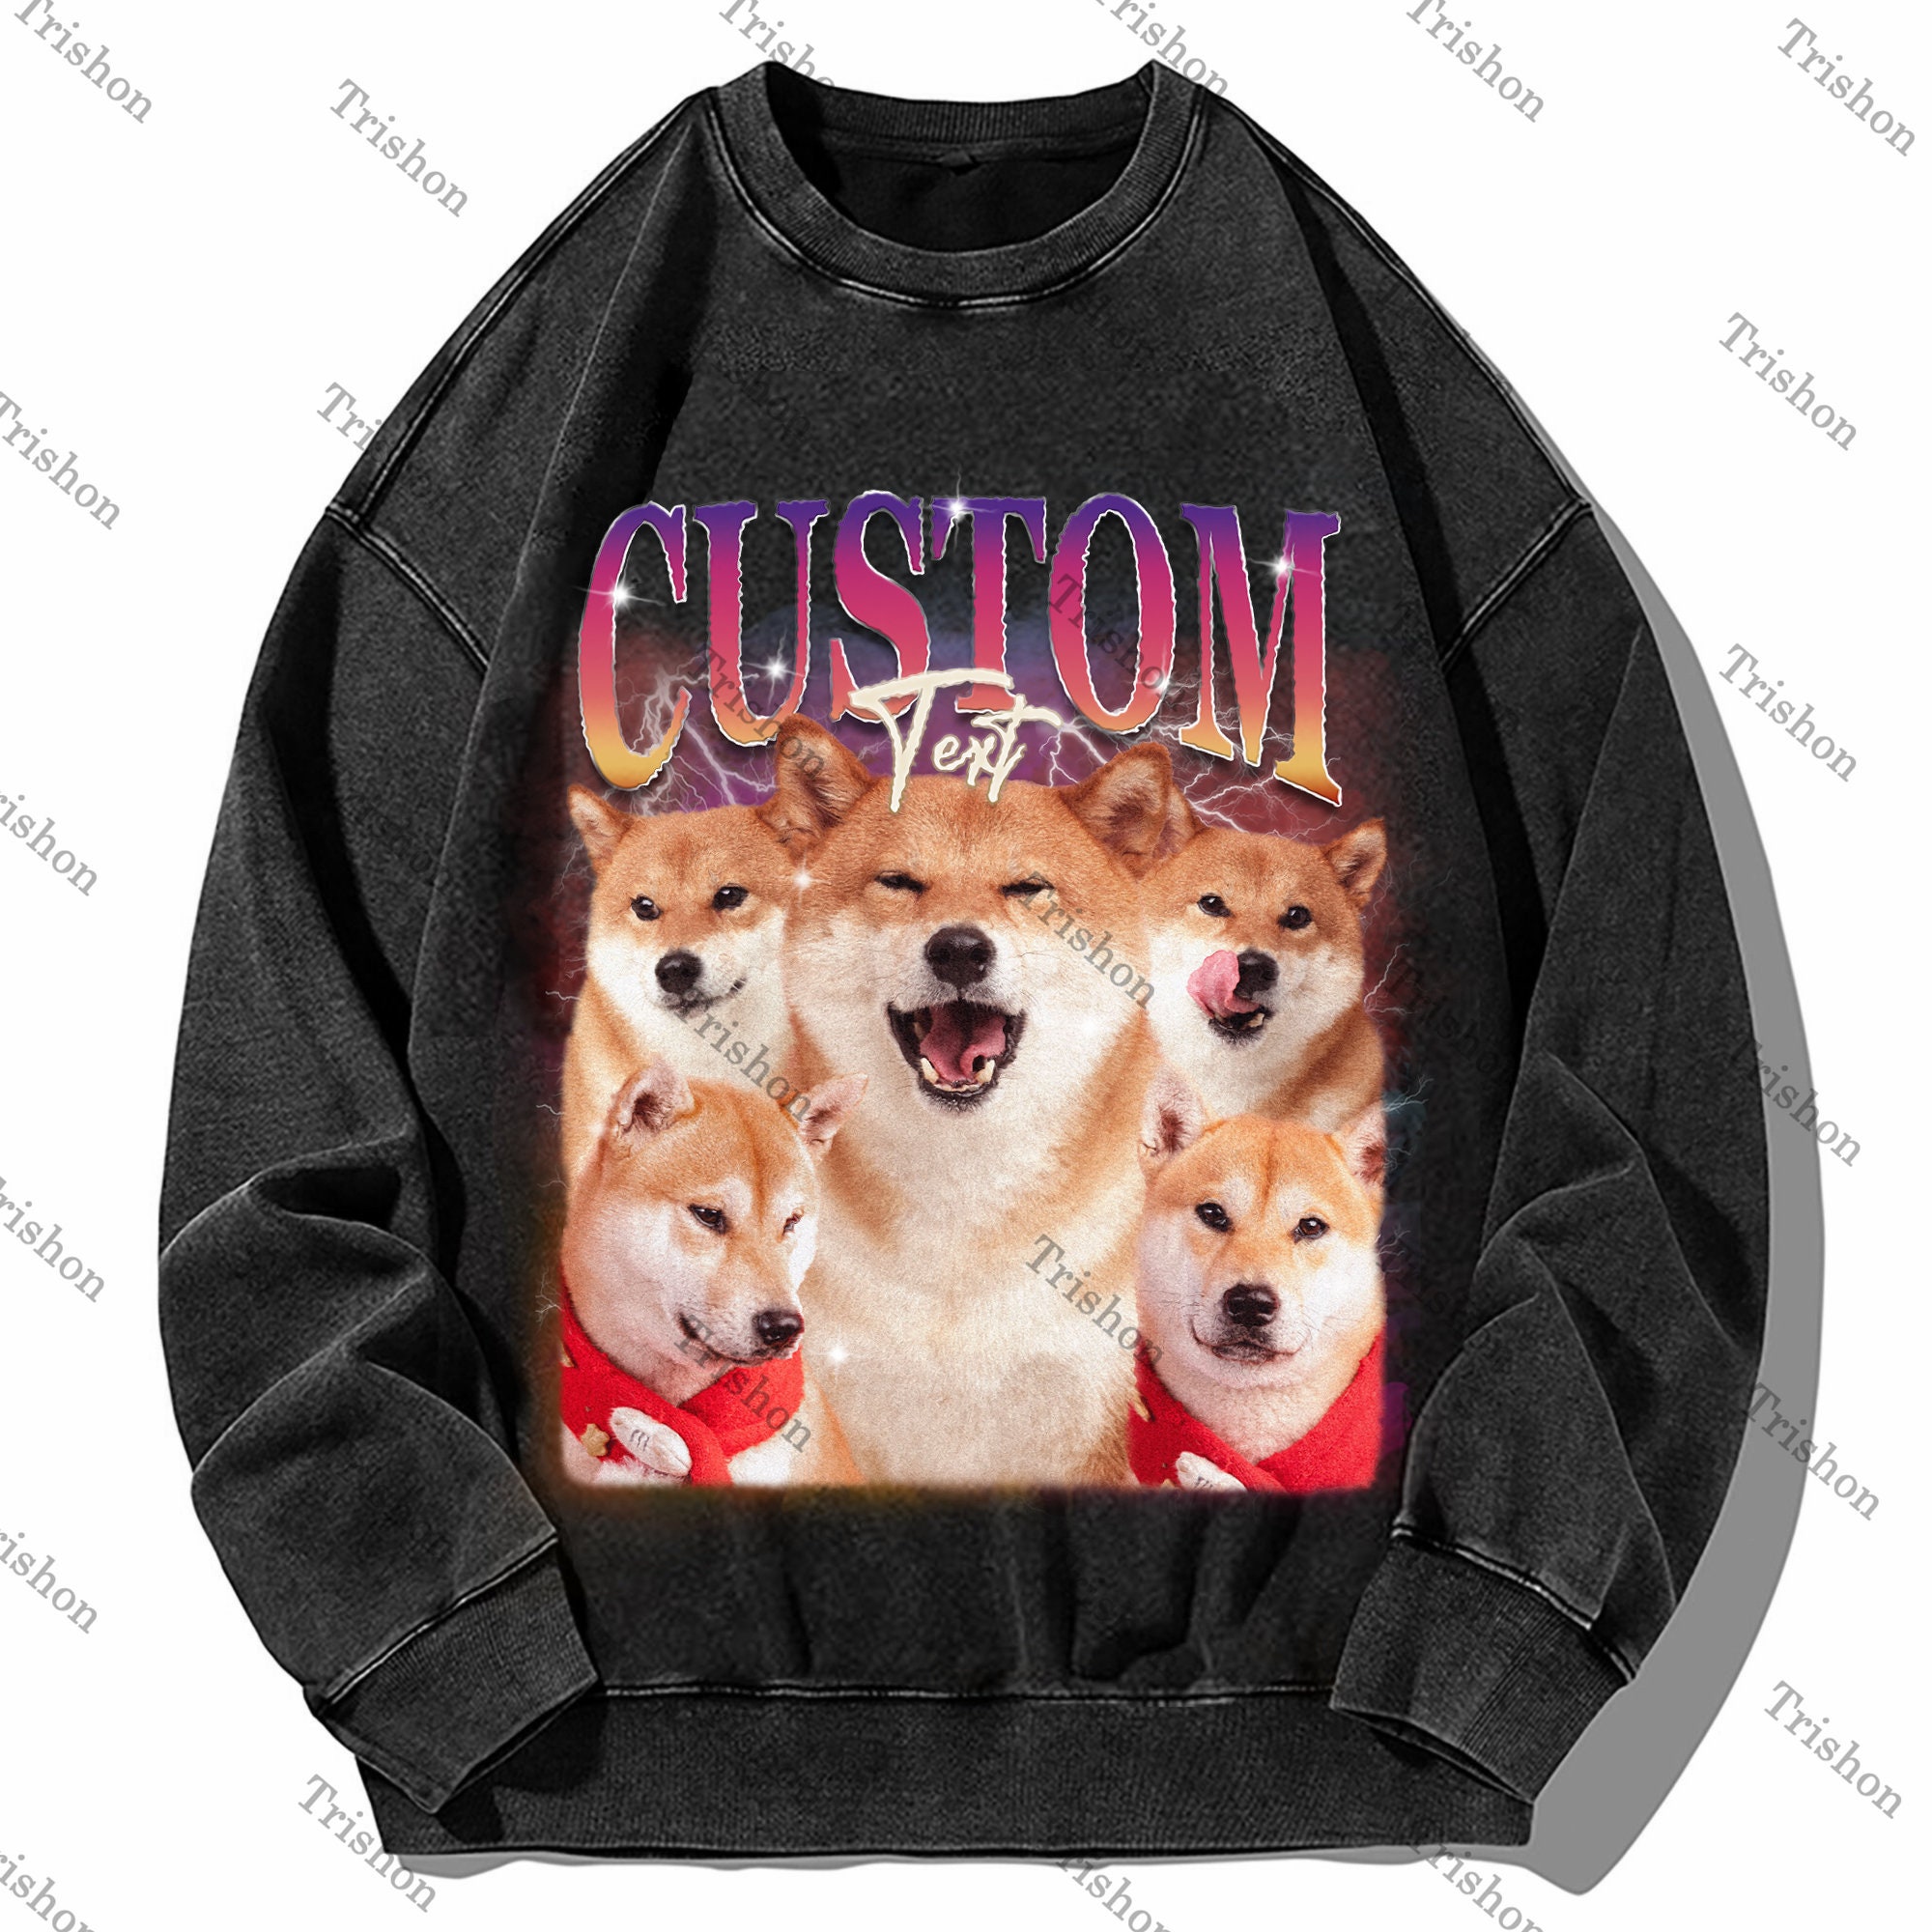 Custom Pet Vintage Washed T-Shirt, Dog Graphic Unisex